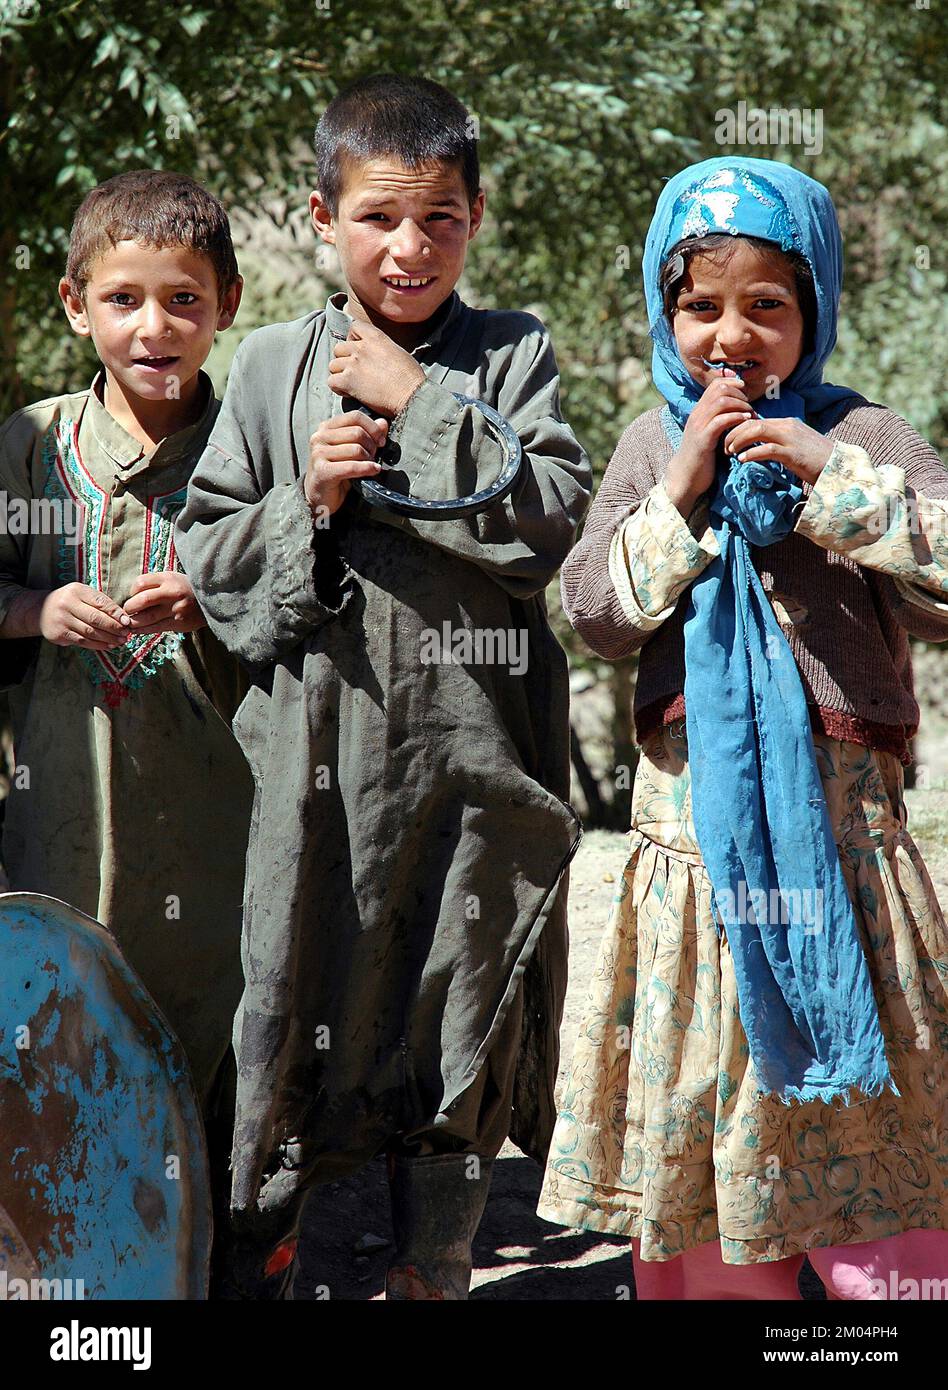 Insediamento Nomad vicino al Minareto di Jam, Provincia di Ghor /Afghanistan: Bambini che indossano abiti tradizionali. I nomadi sono ancora comuni in questa regione. Foto Stock